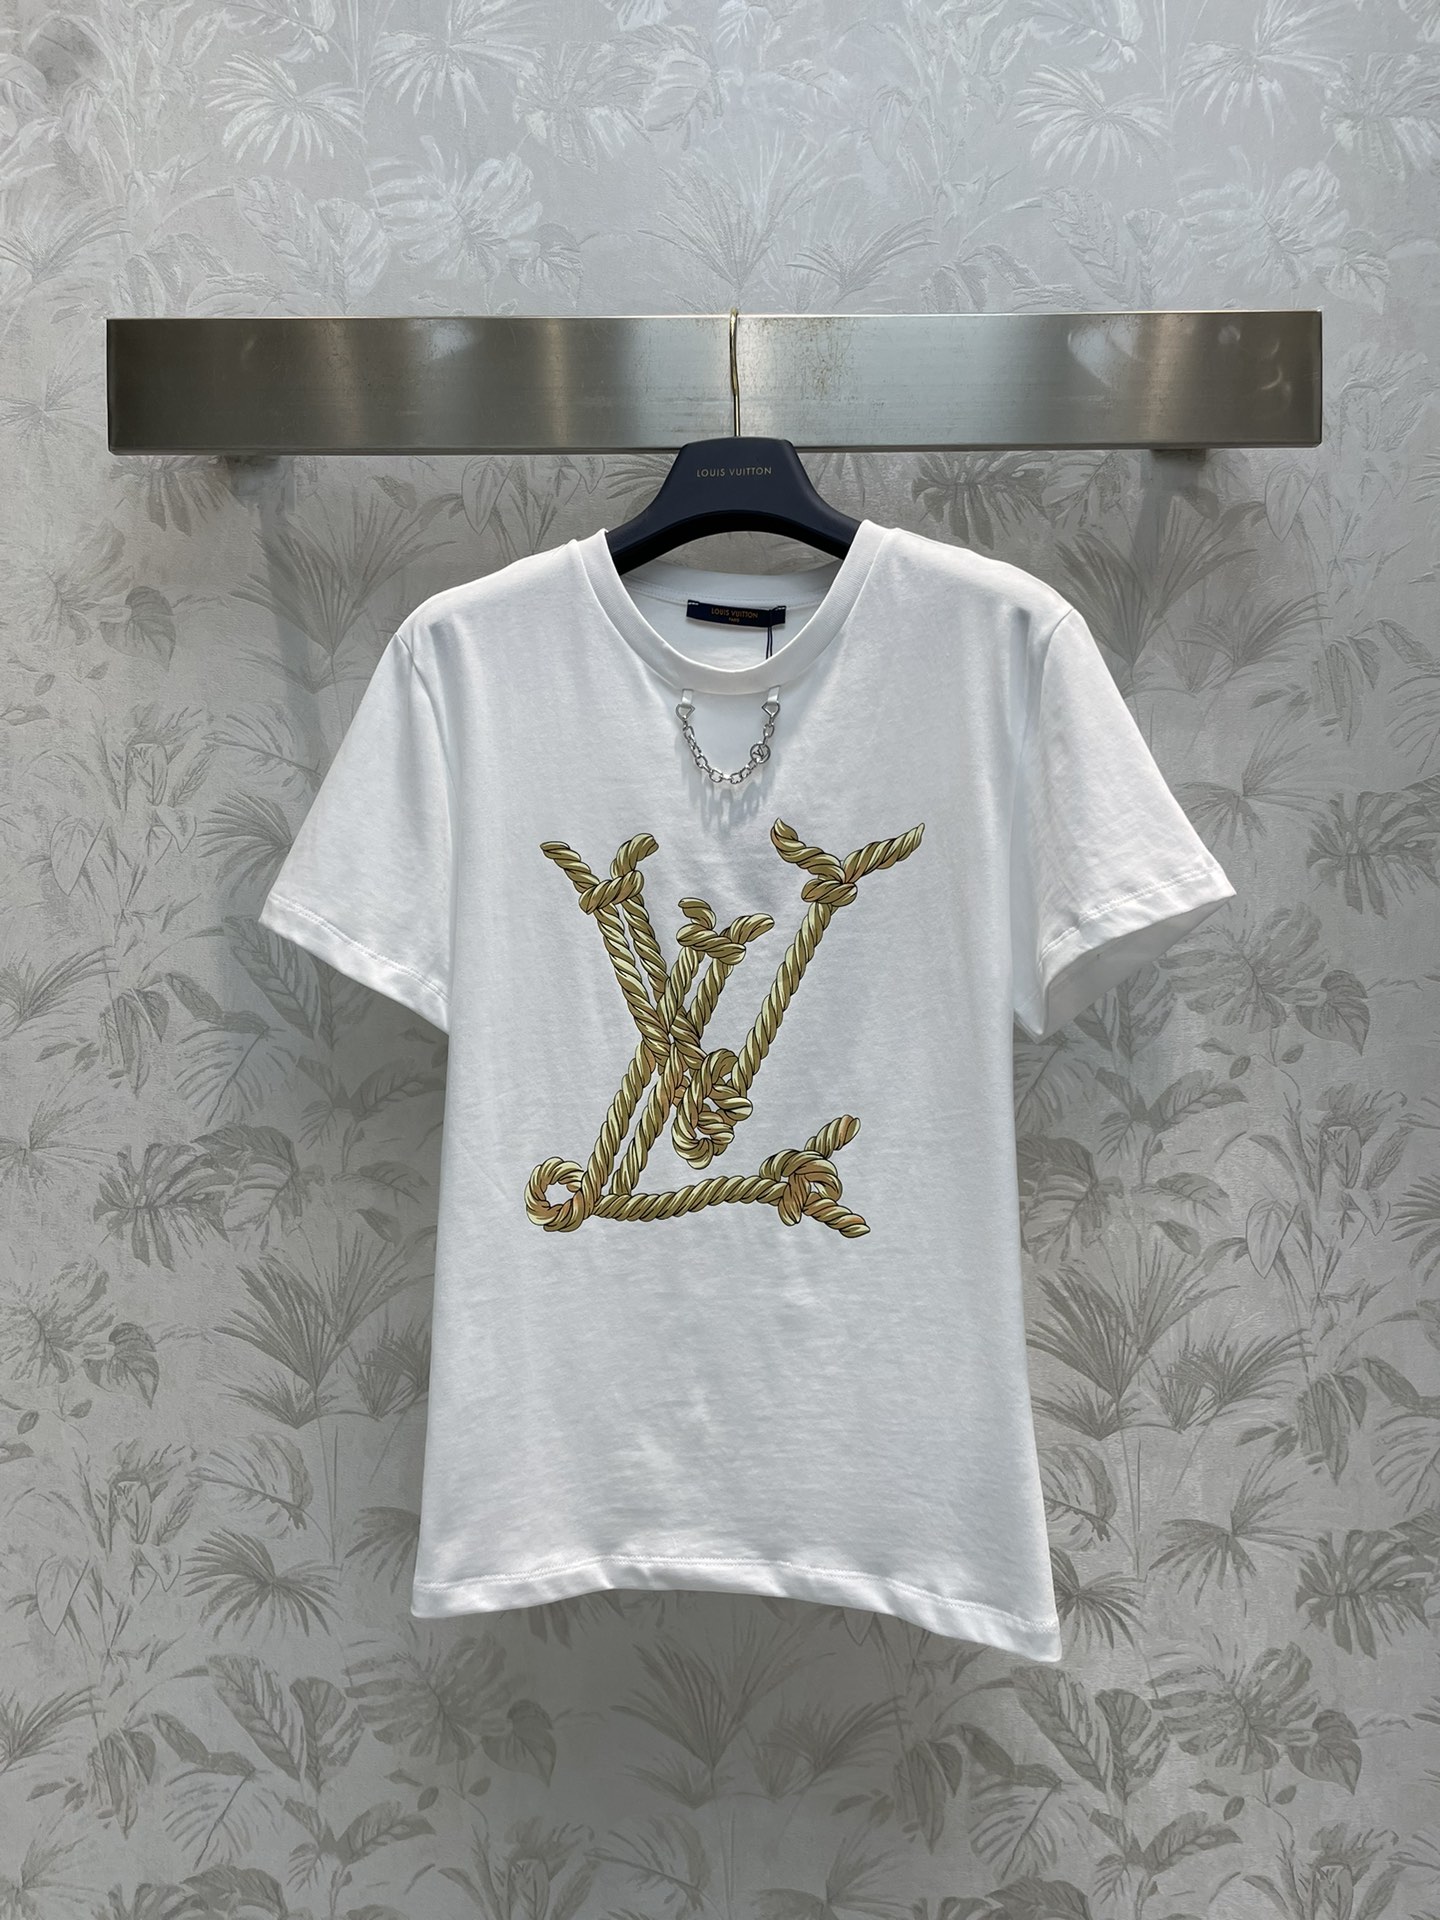 L家24春夏航海系列印花T恤日常巨实穿又百搭的单品之一基础的经典版型吸睛的琏条撞色印花上身自带舒适松弛感